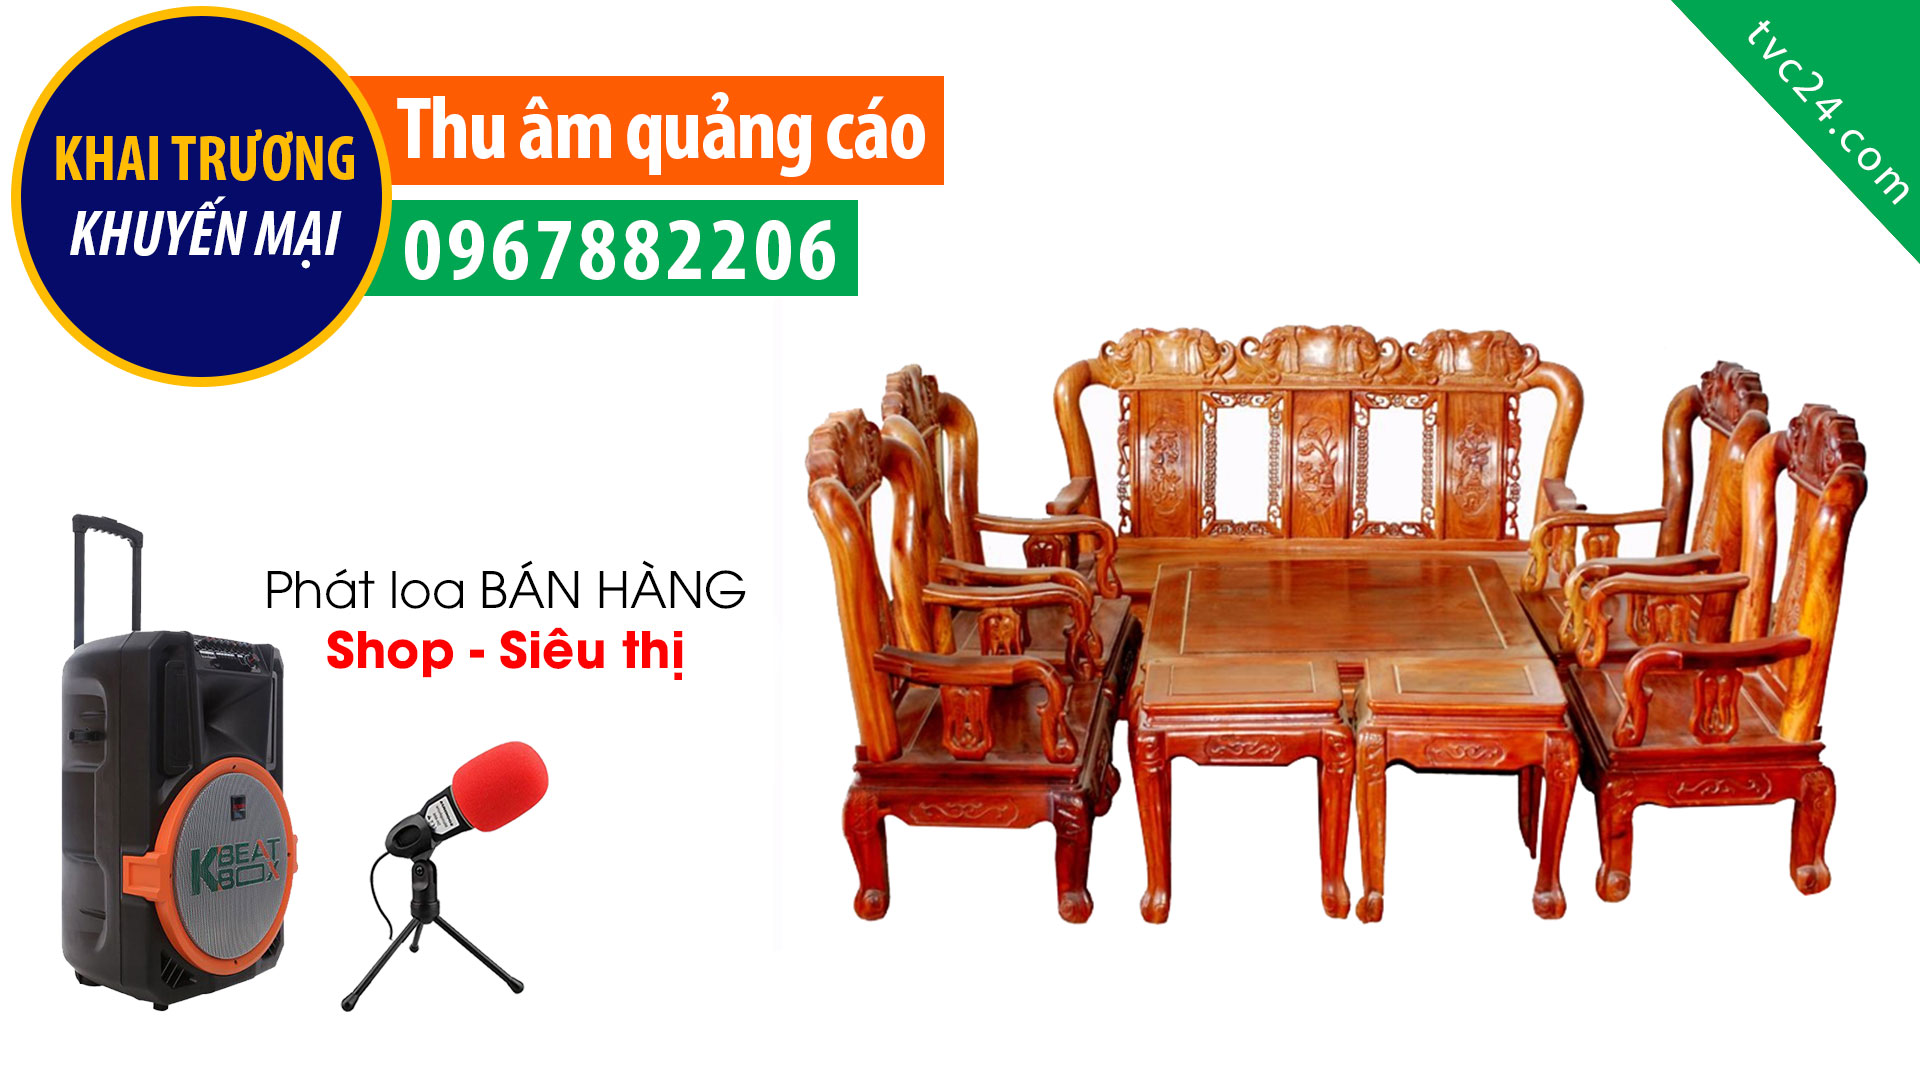  Thu âm quảng cáo khai trương khuyến mại Đồ gỗ Duy Trang